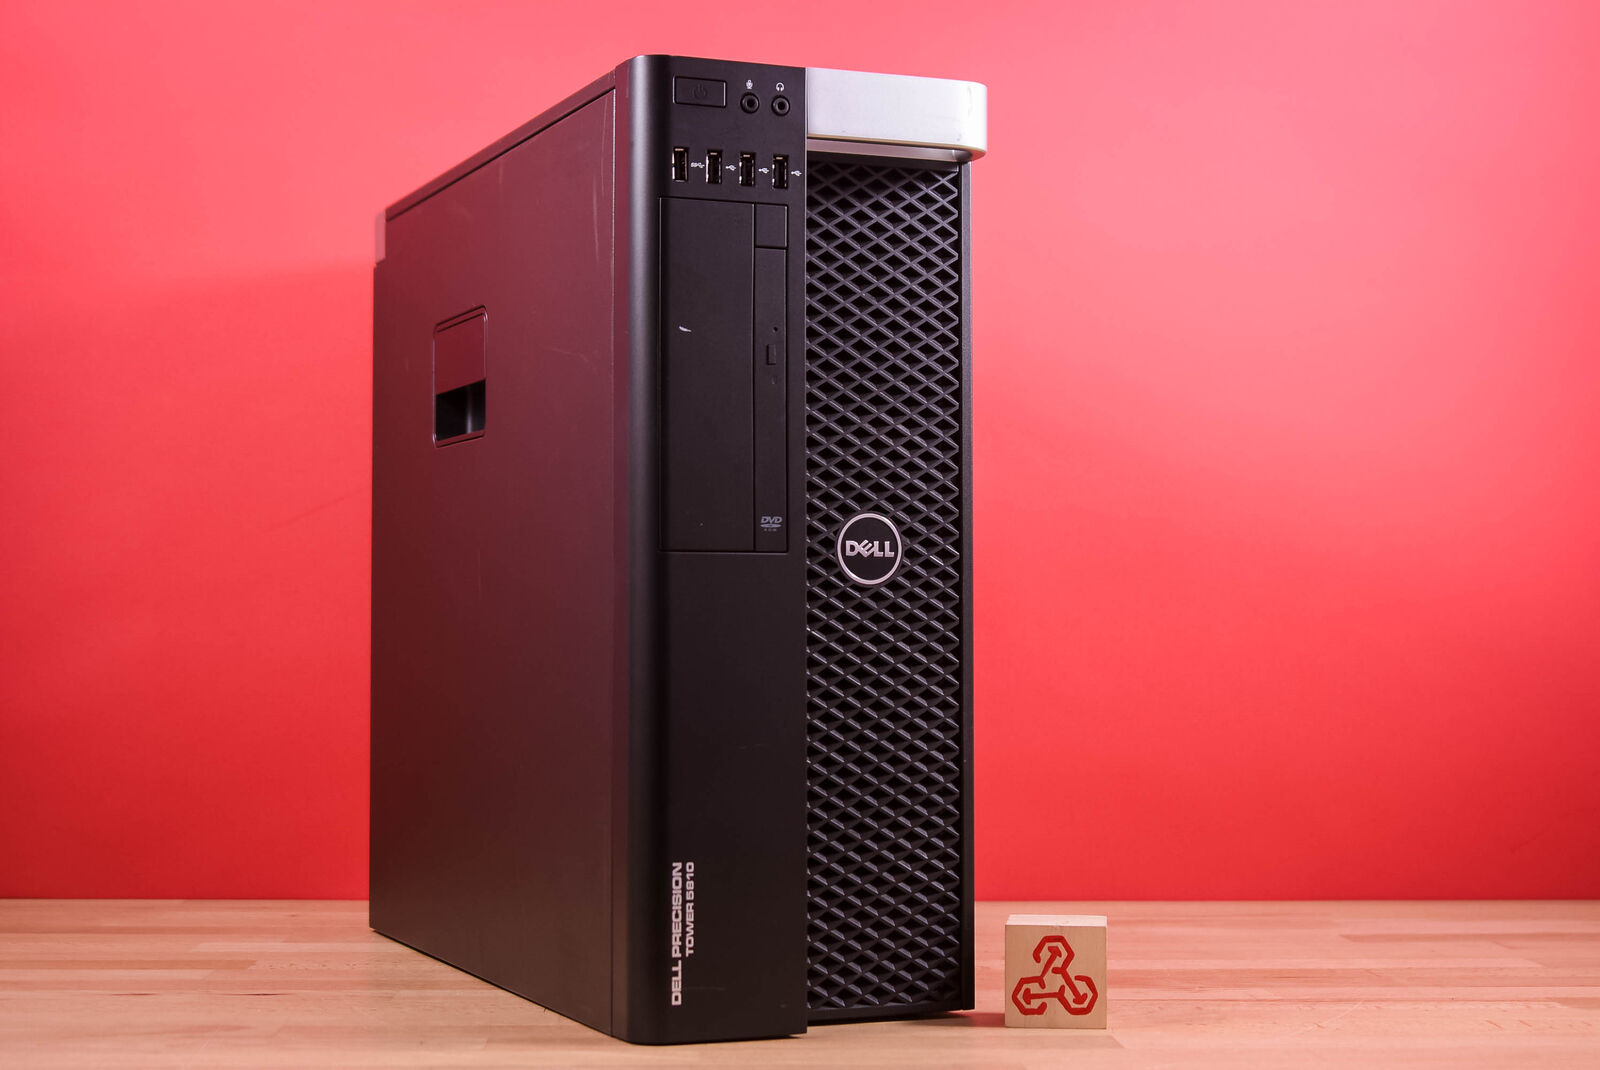 Dell Precision T5810 Workstation Xeon E5-1620 v3 Barebones (No RAM, HDD, GPU)